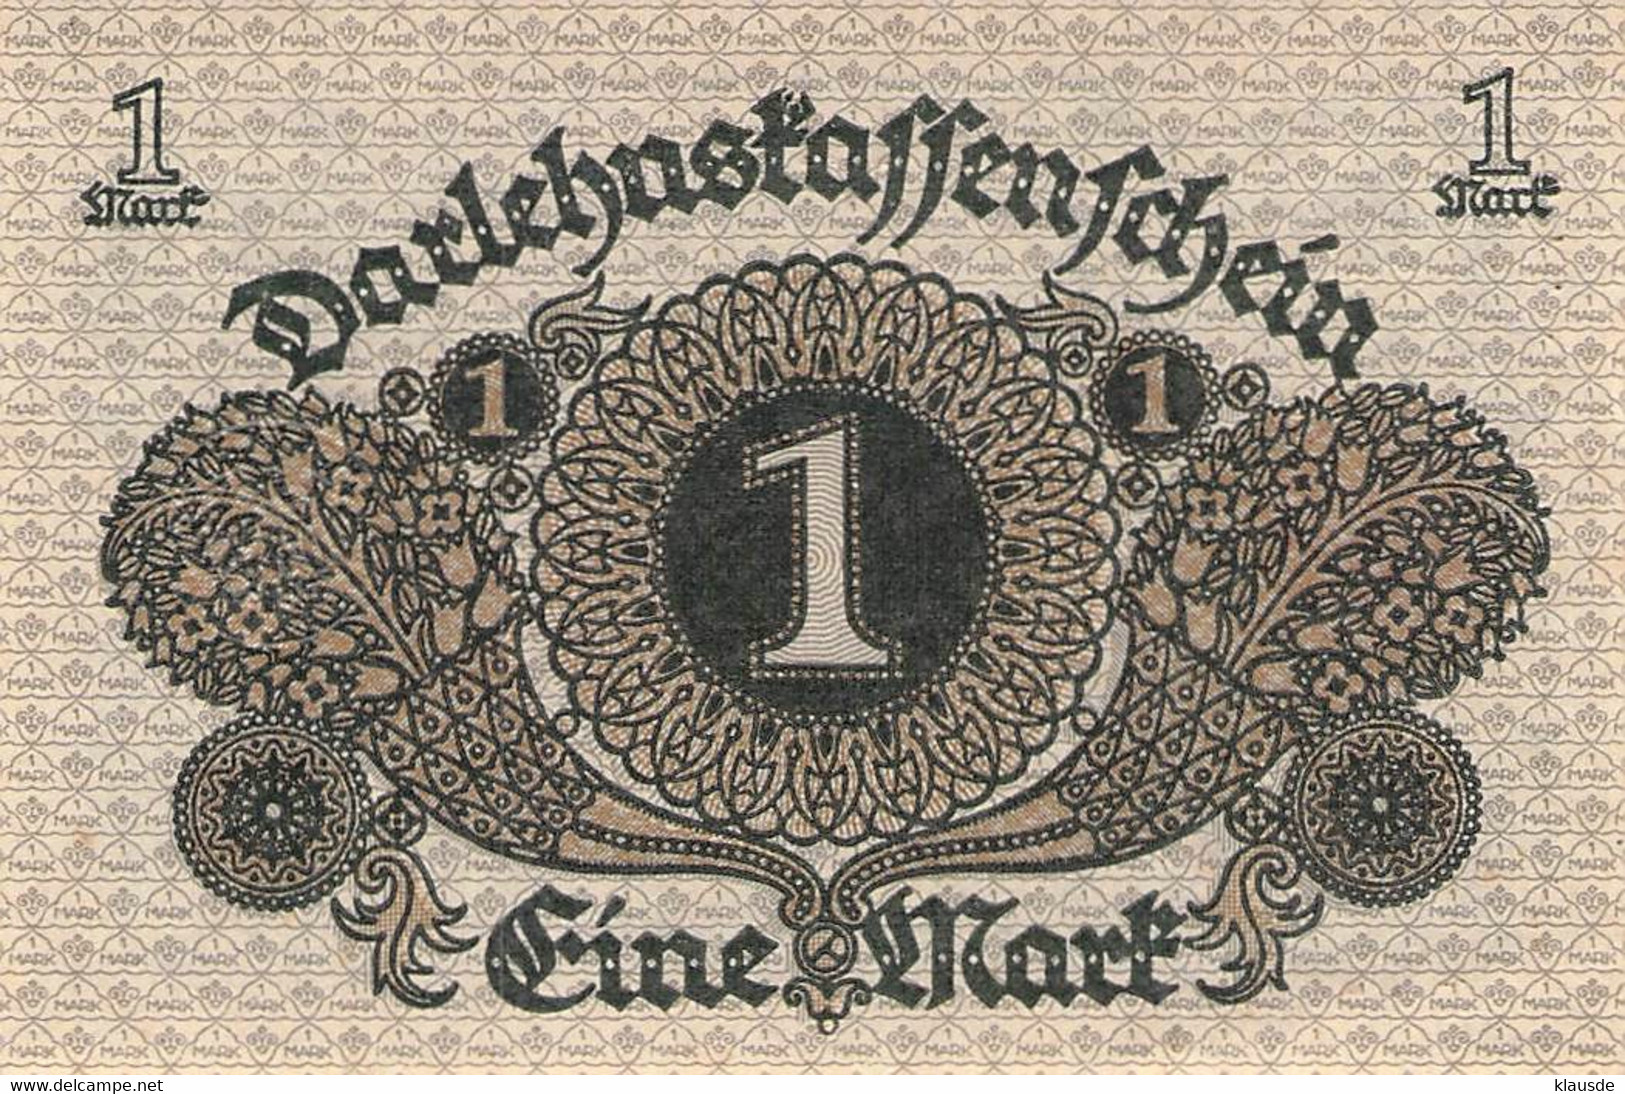 1 Mark 1920 Deutsche Reichsbanknote AU/EF (II)  Darlehenskassenschein - 1 Mark